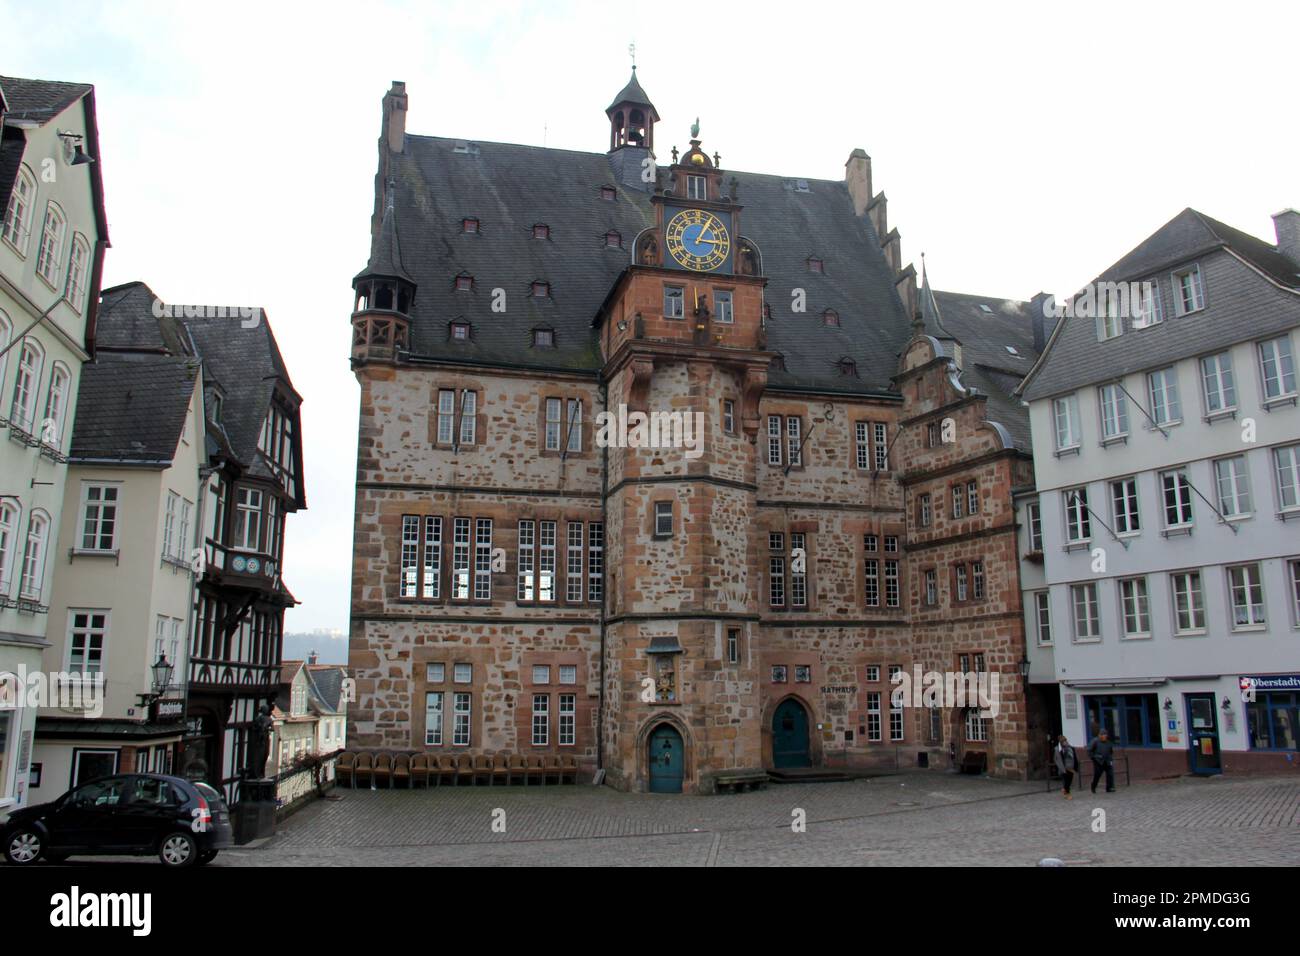 Historisches Rathausgebäude aus dem 16. Jahrhundert mit astronomischer Renaissance-Uhr am Marktplatz der Oberstadt, Oberstadtmarkt, Marburg, Deutschland Stockfoto